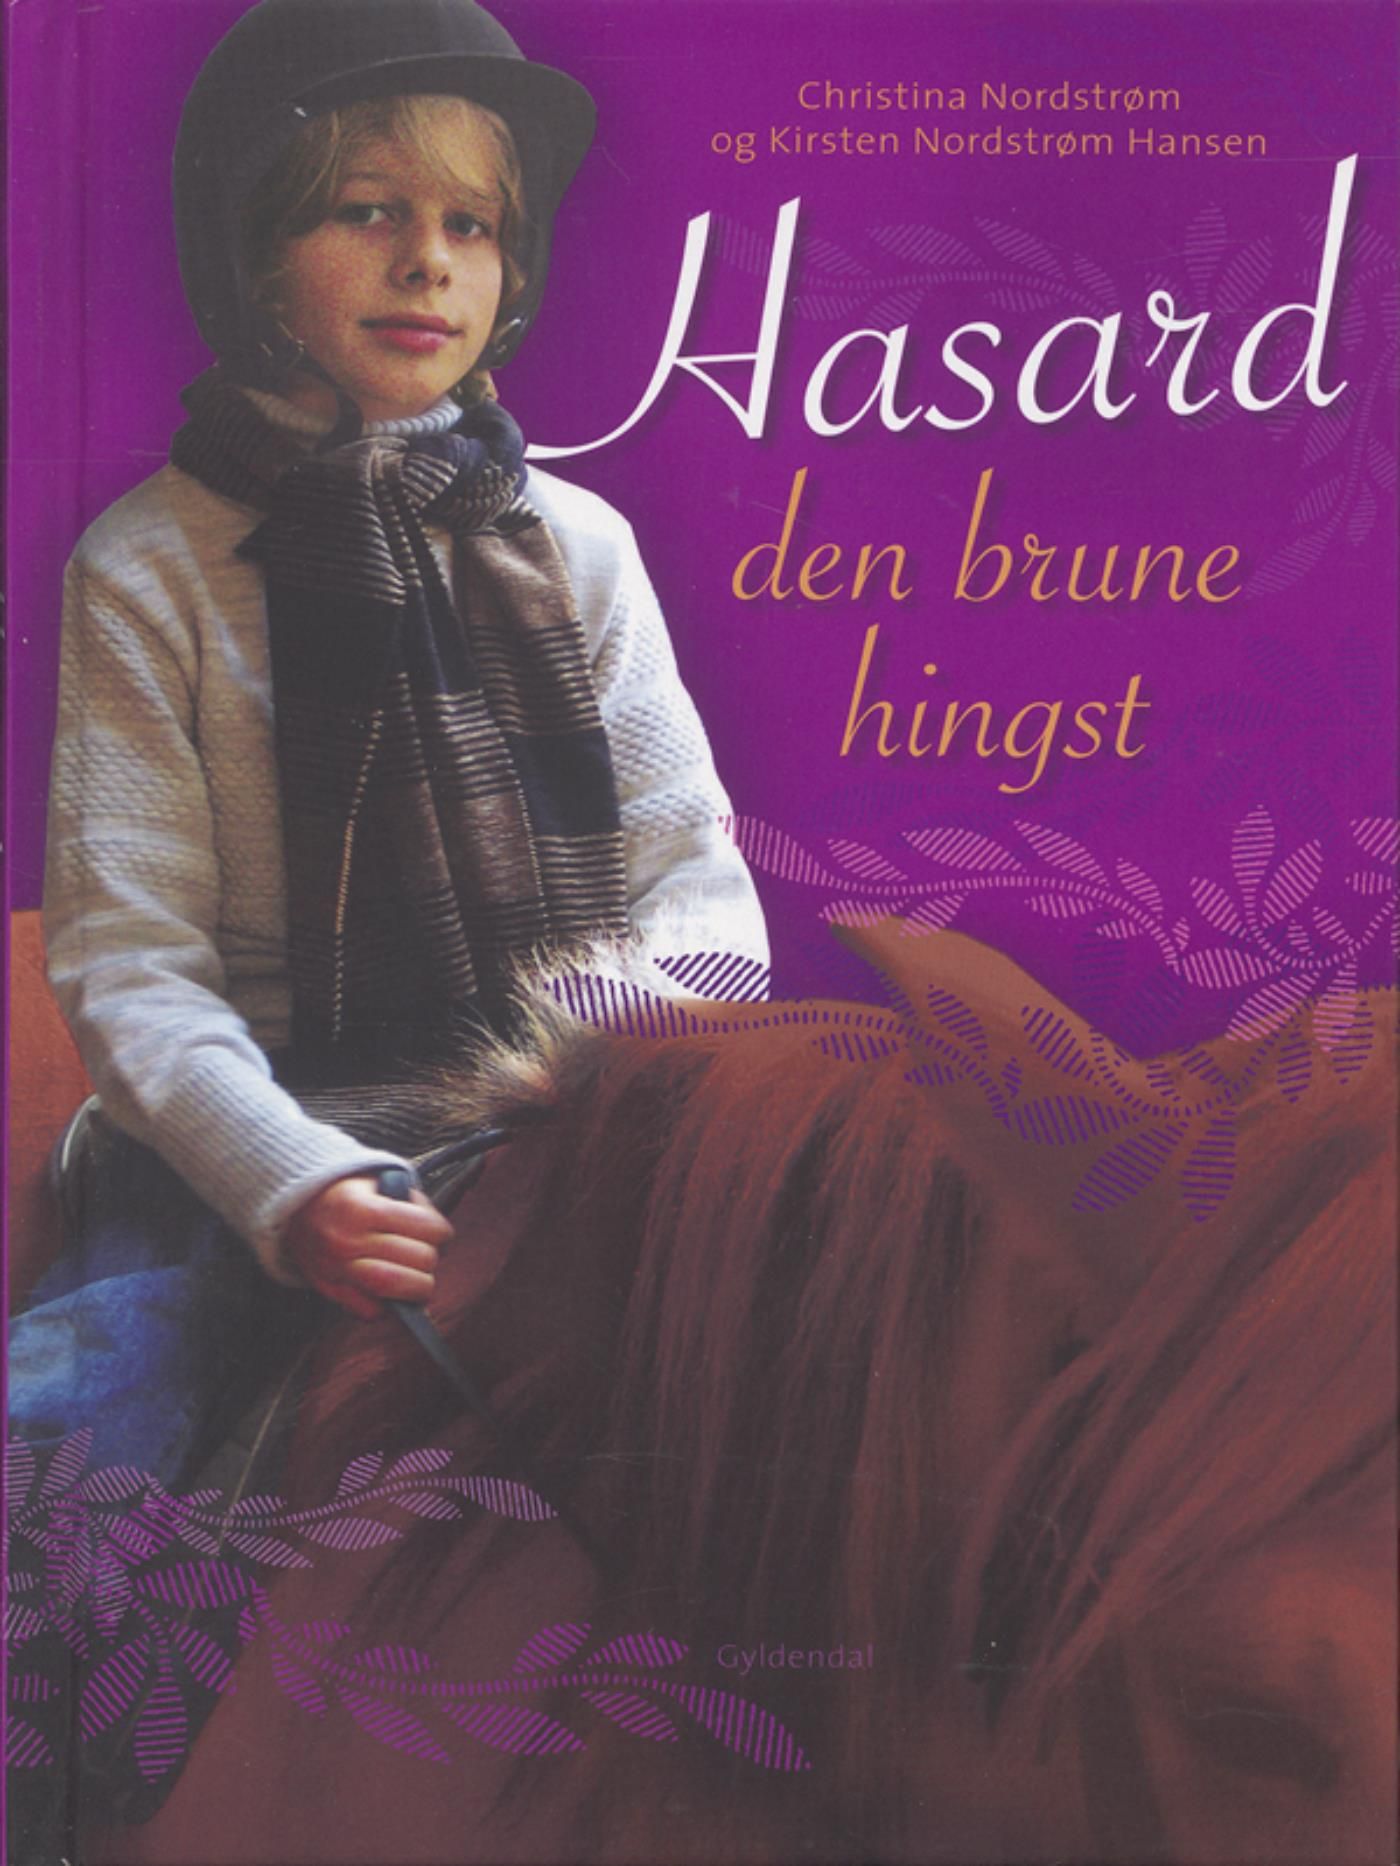 Hasard - den brune hingst, e-bok av Kirsten Nordstrøm Hansen, Christina Nordstrøm